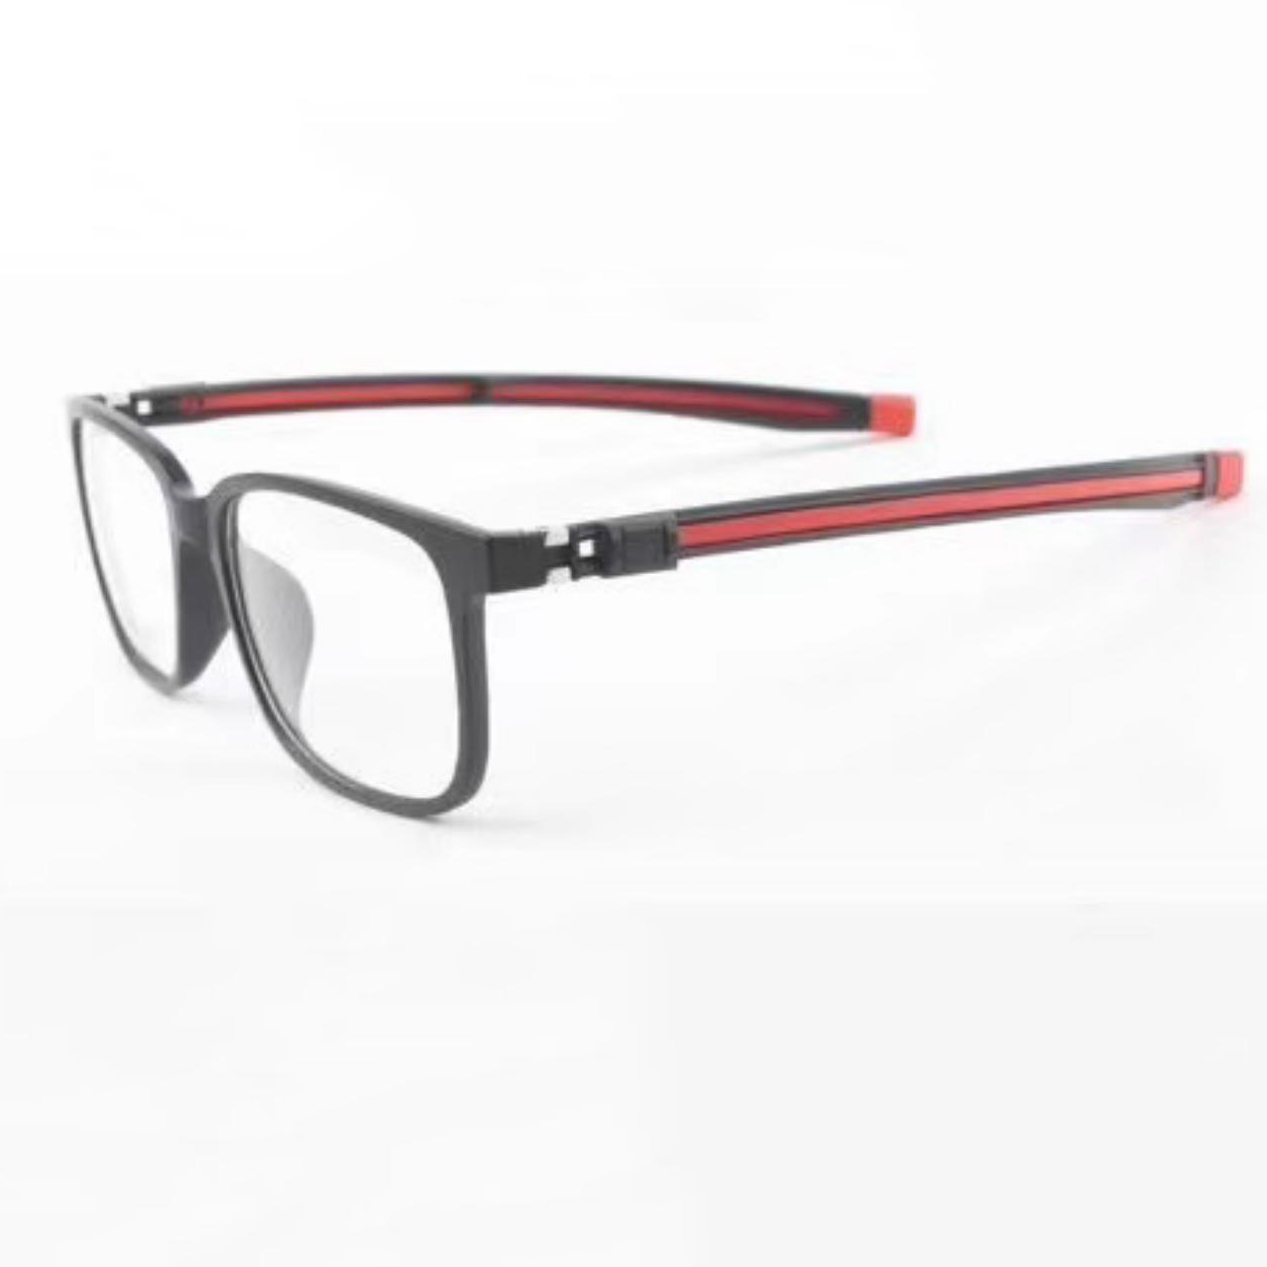 New Trendy Unisex Magnetic TR Eyeglasses